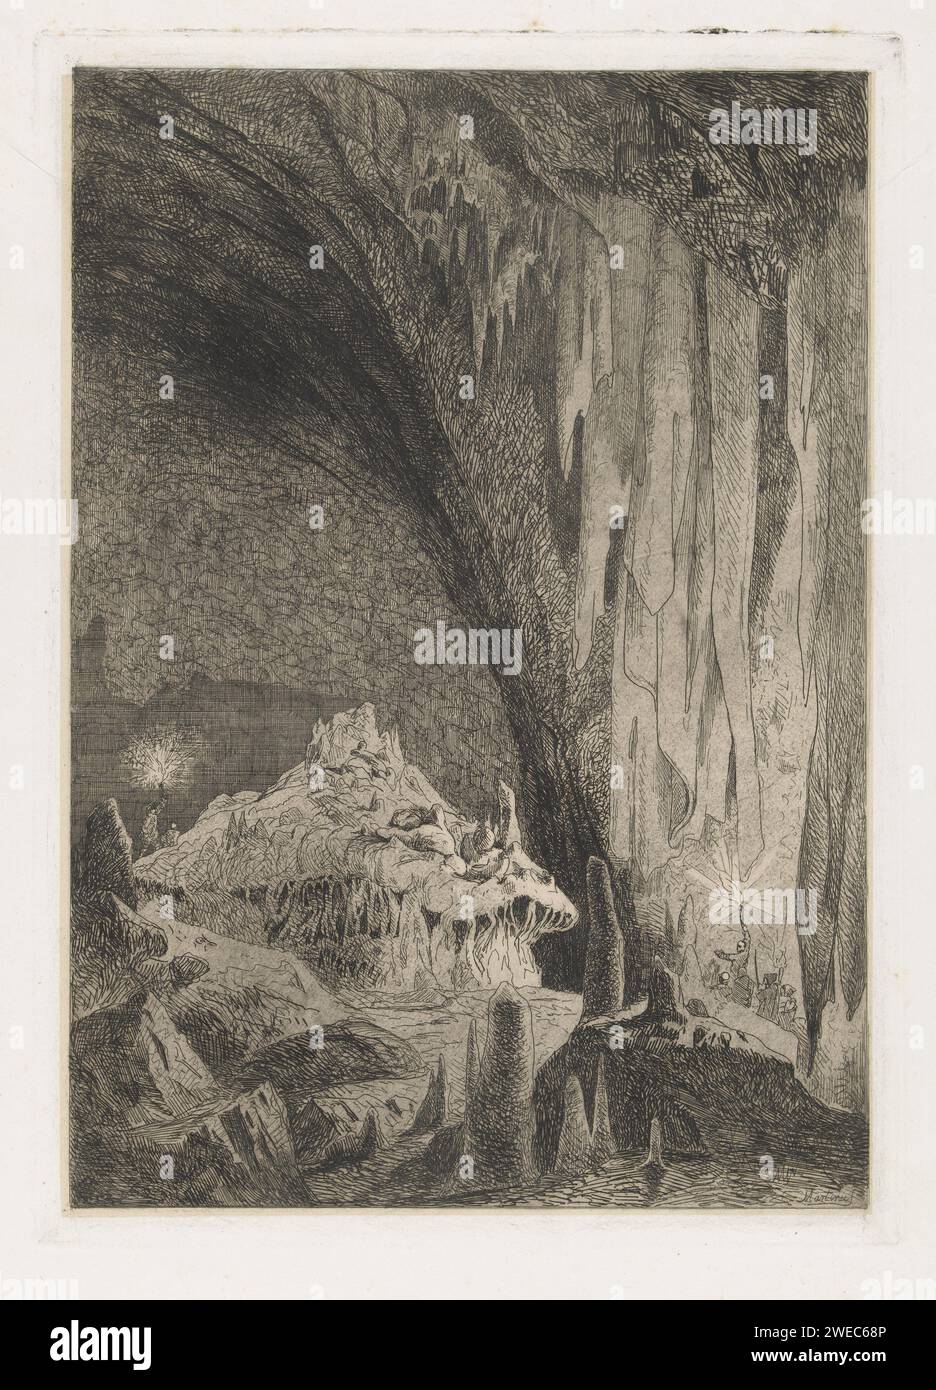 Salle dans les grottes de Han, Martinus Antonius Kuytenbrouwer Jr., 1854 impression dans une salle dans les grottes de Han, deux groupes de visiteurs illuminent les stalagmites et stalactites. Document de Bruxelles. gravure / grotte de la pointe sèche, grotte. Grotte stalactitique Han-sur-Lesse Banque D'Images